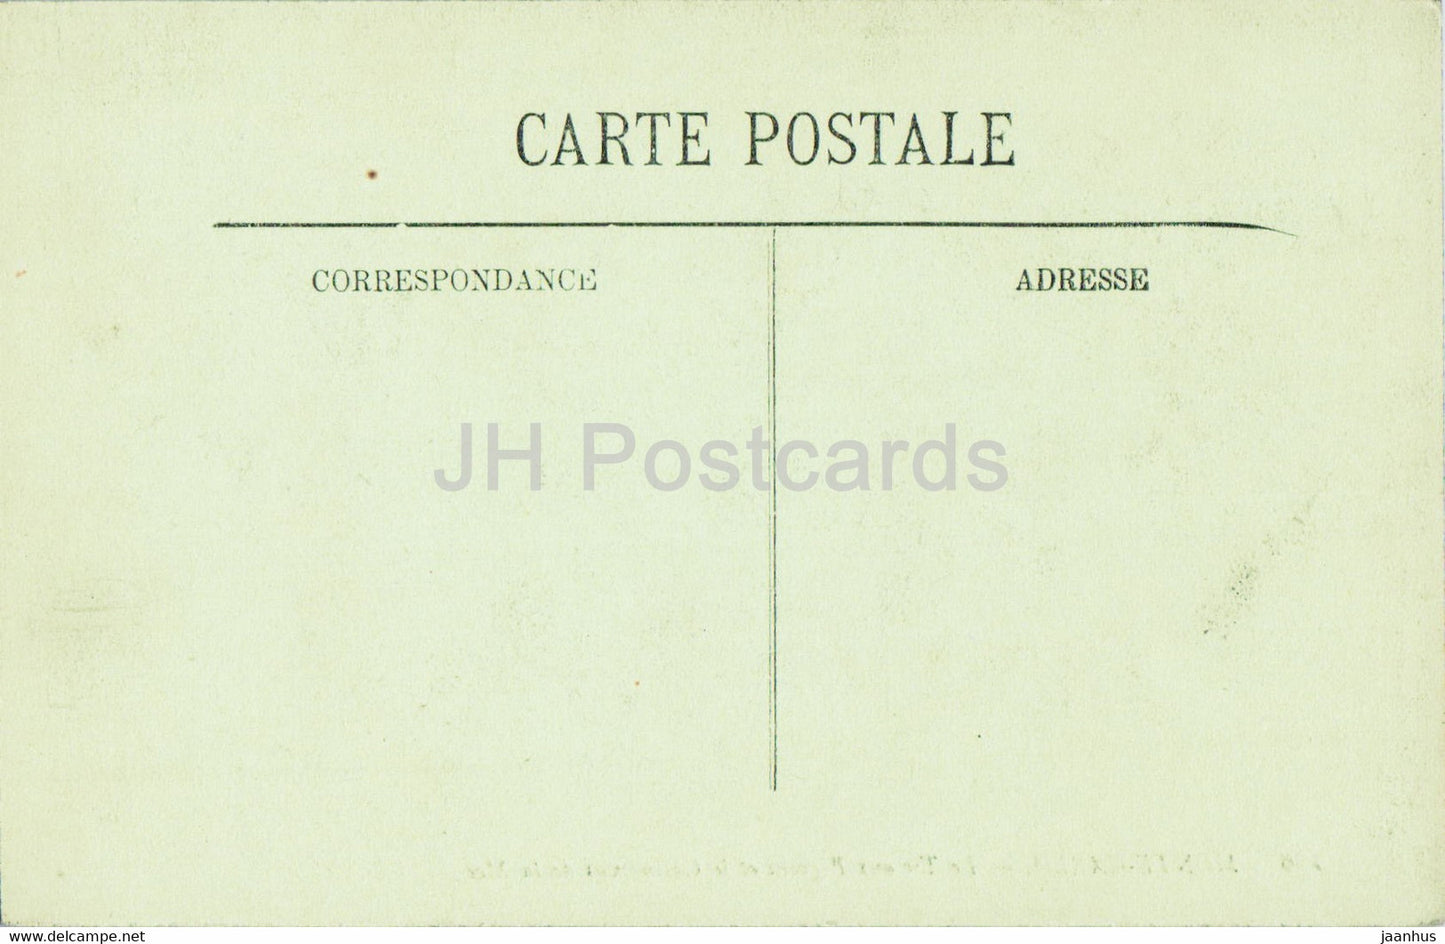 Monte Carlo - Le Tir aux Pigeons et le Casino vus de la Mer - 136 - carte postale ancienne - Monaco - inutilisée